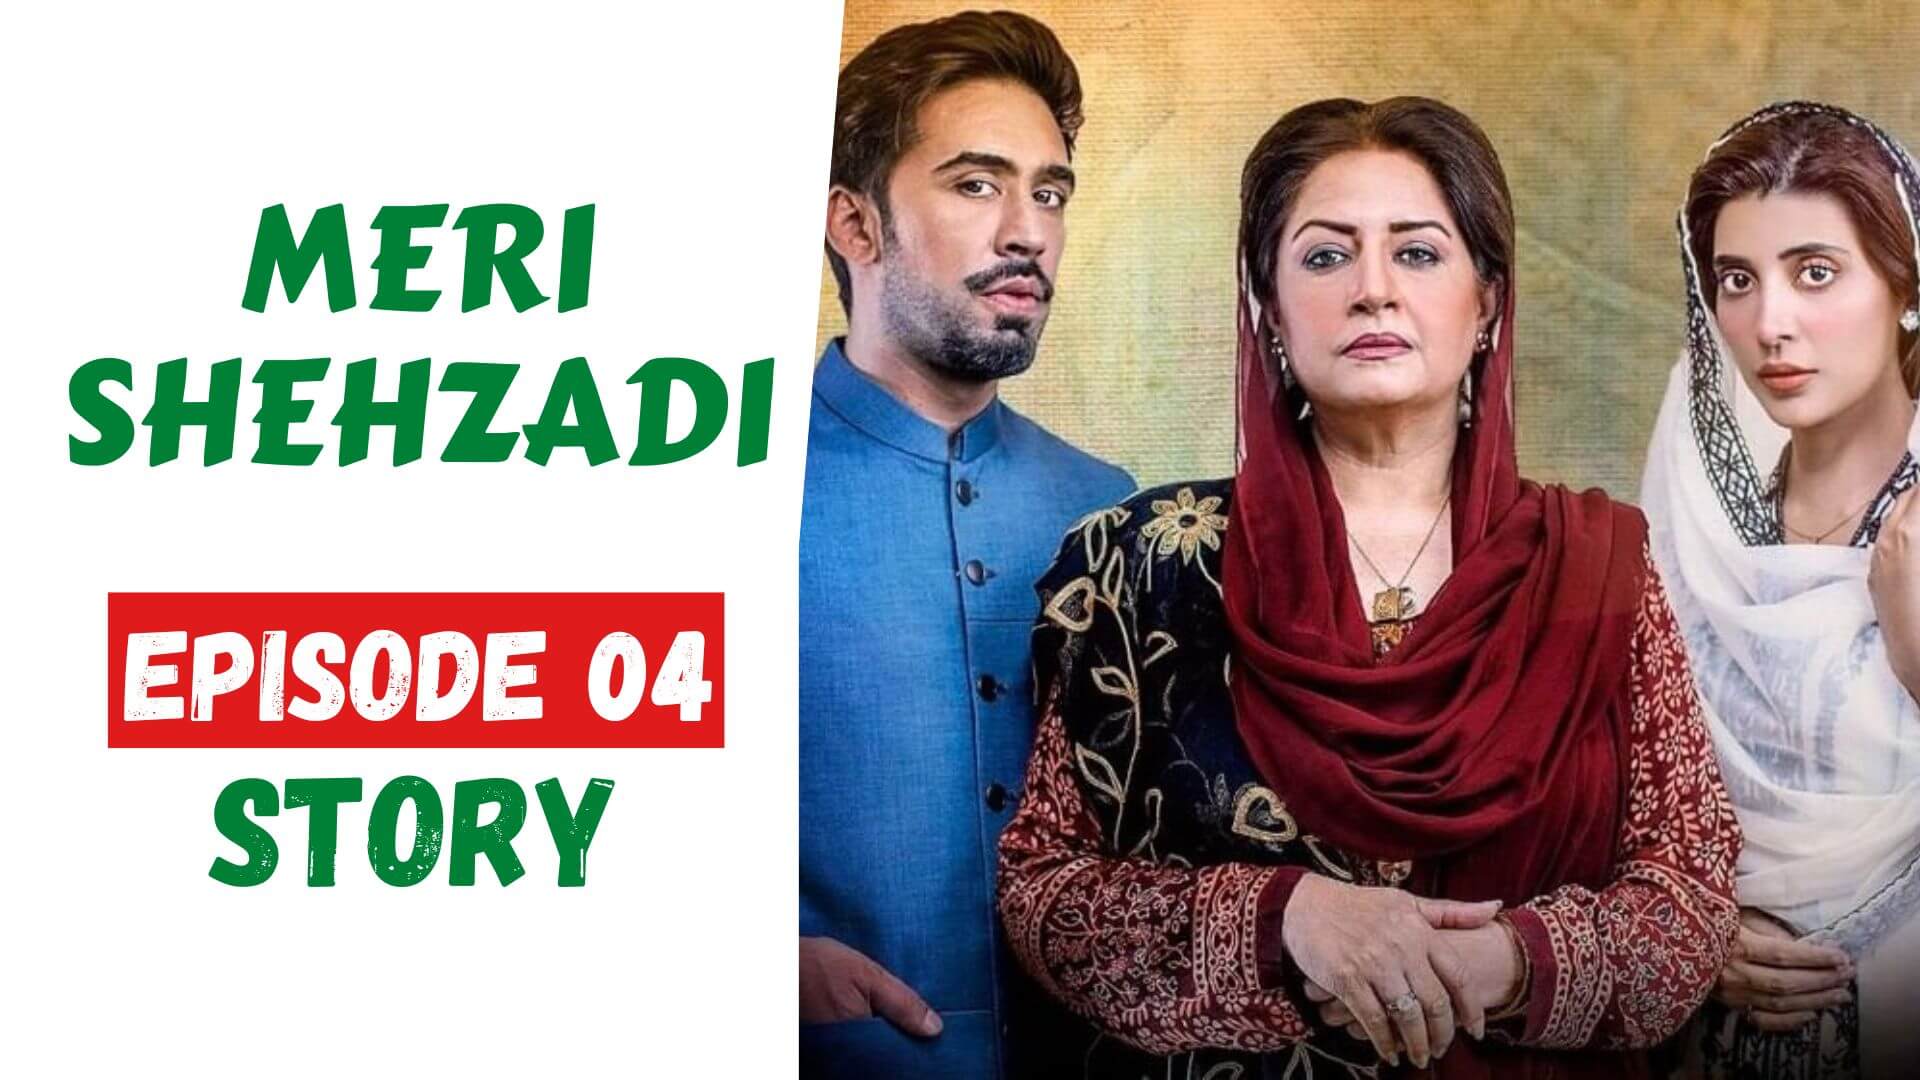 Meri Shehzadi Episode 04 Story